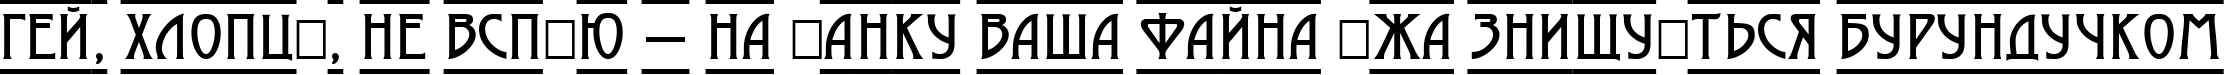 Пример написания шрифтом a_ModernoDcFr текста на украинском